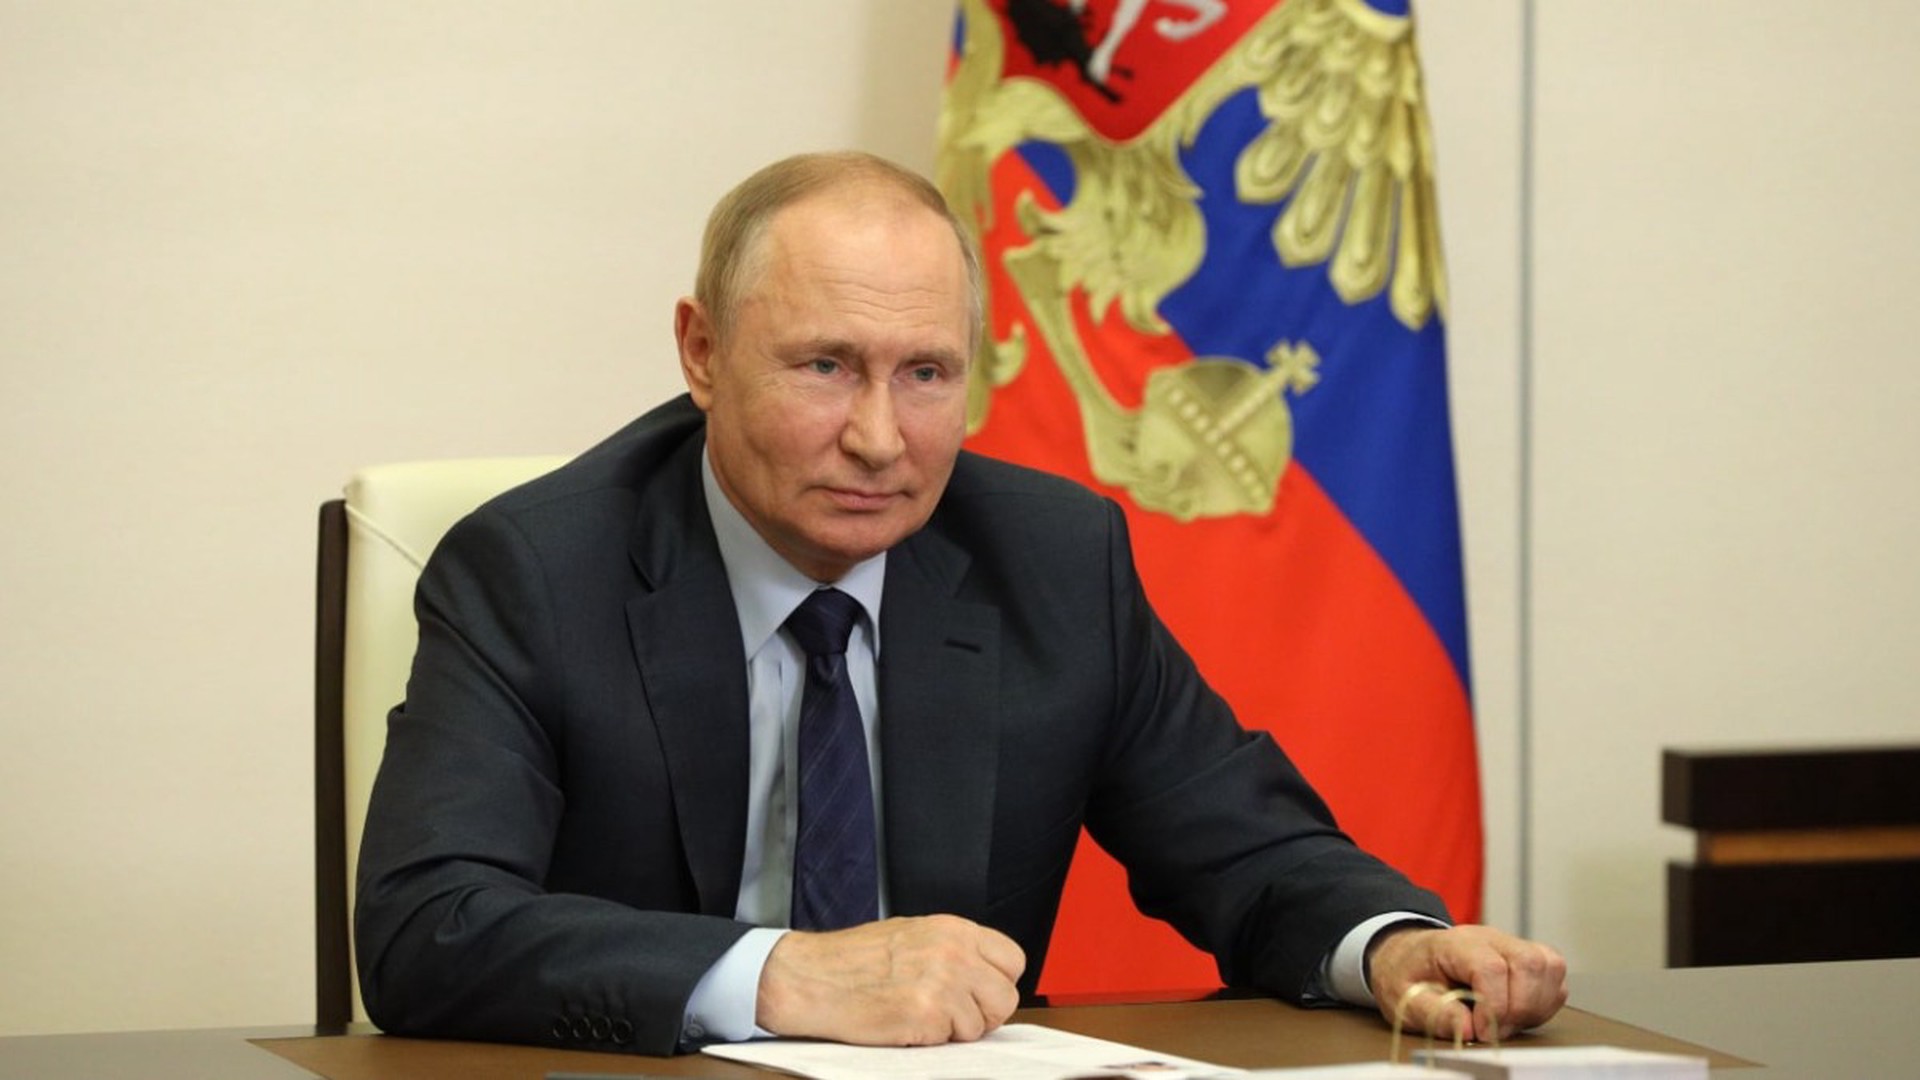 Путин заявил, что путешествия должны стать доступными для всех россиян независимо от дохода